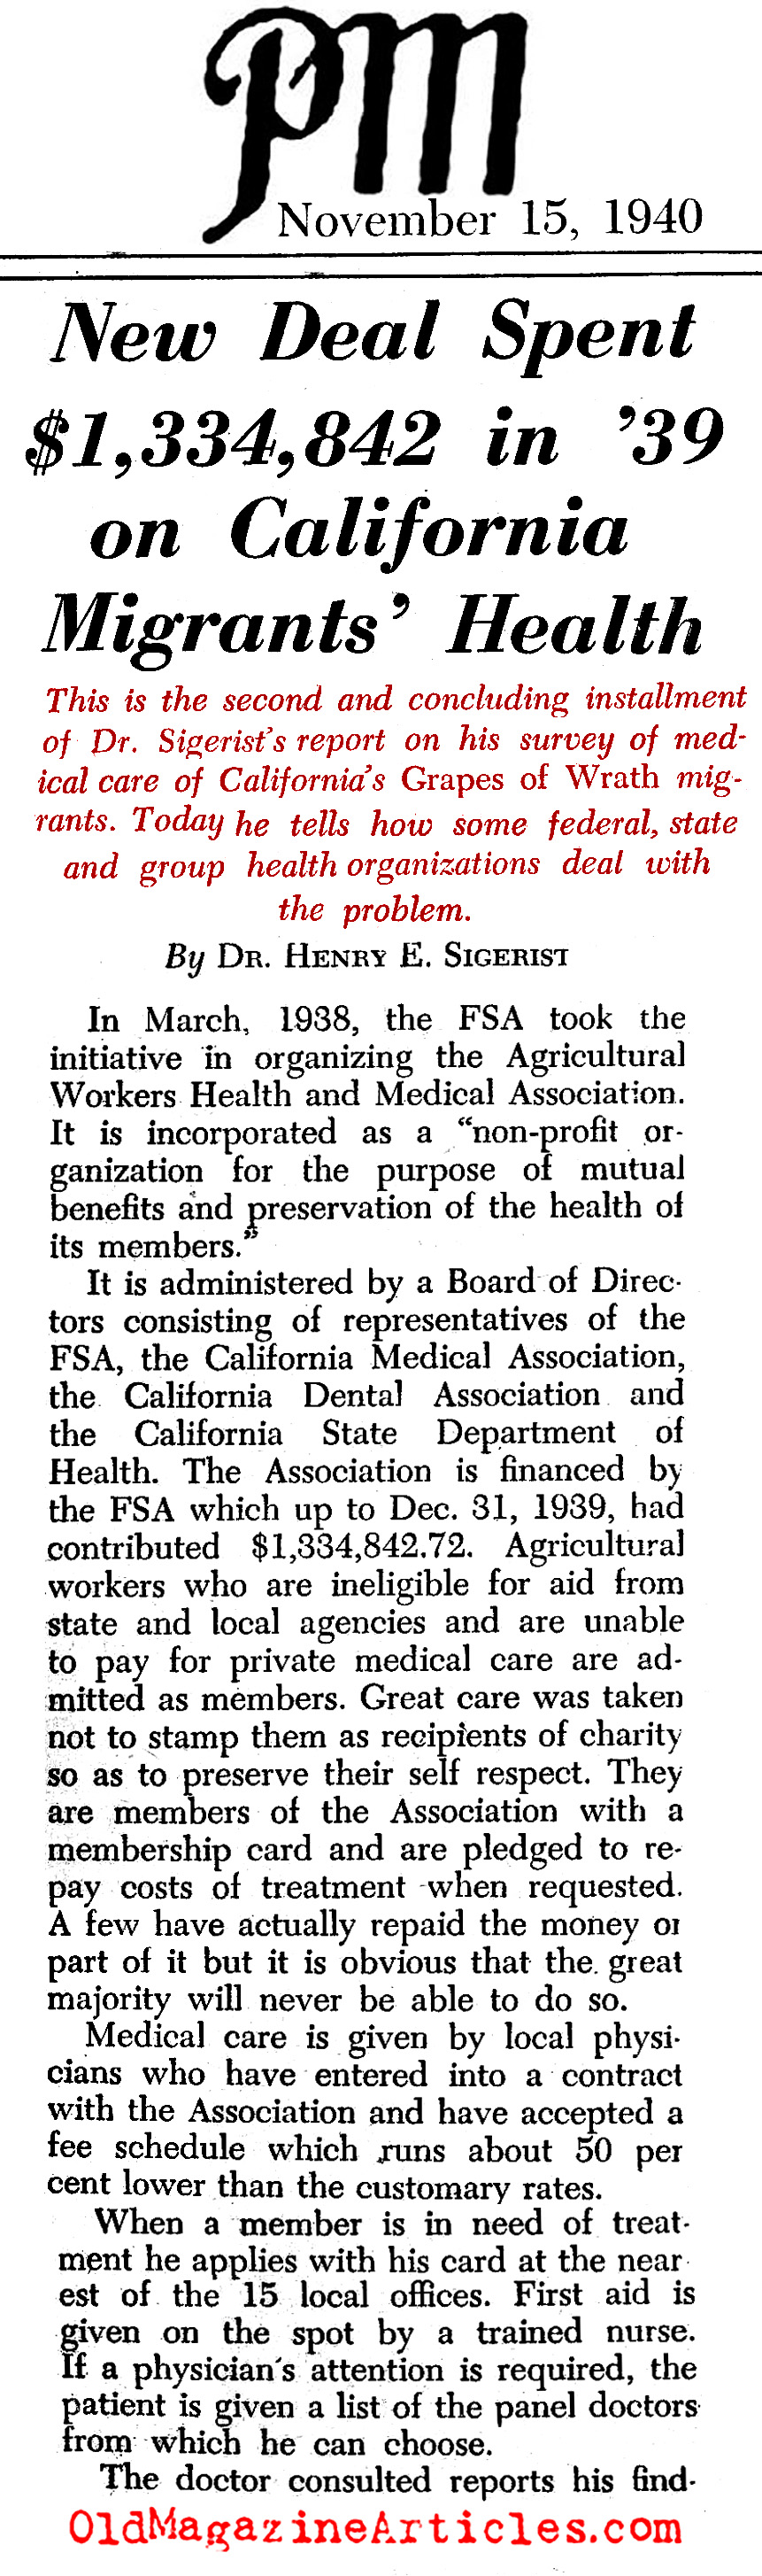 Government Heath Care for California Migrants (PM Tabloid, 1940)